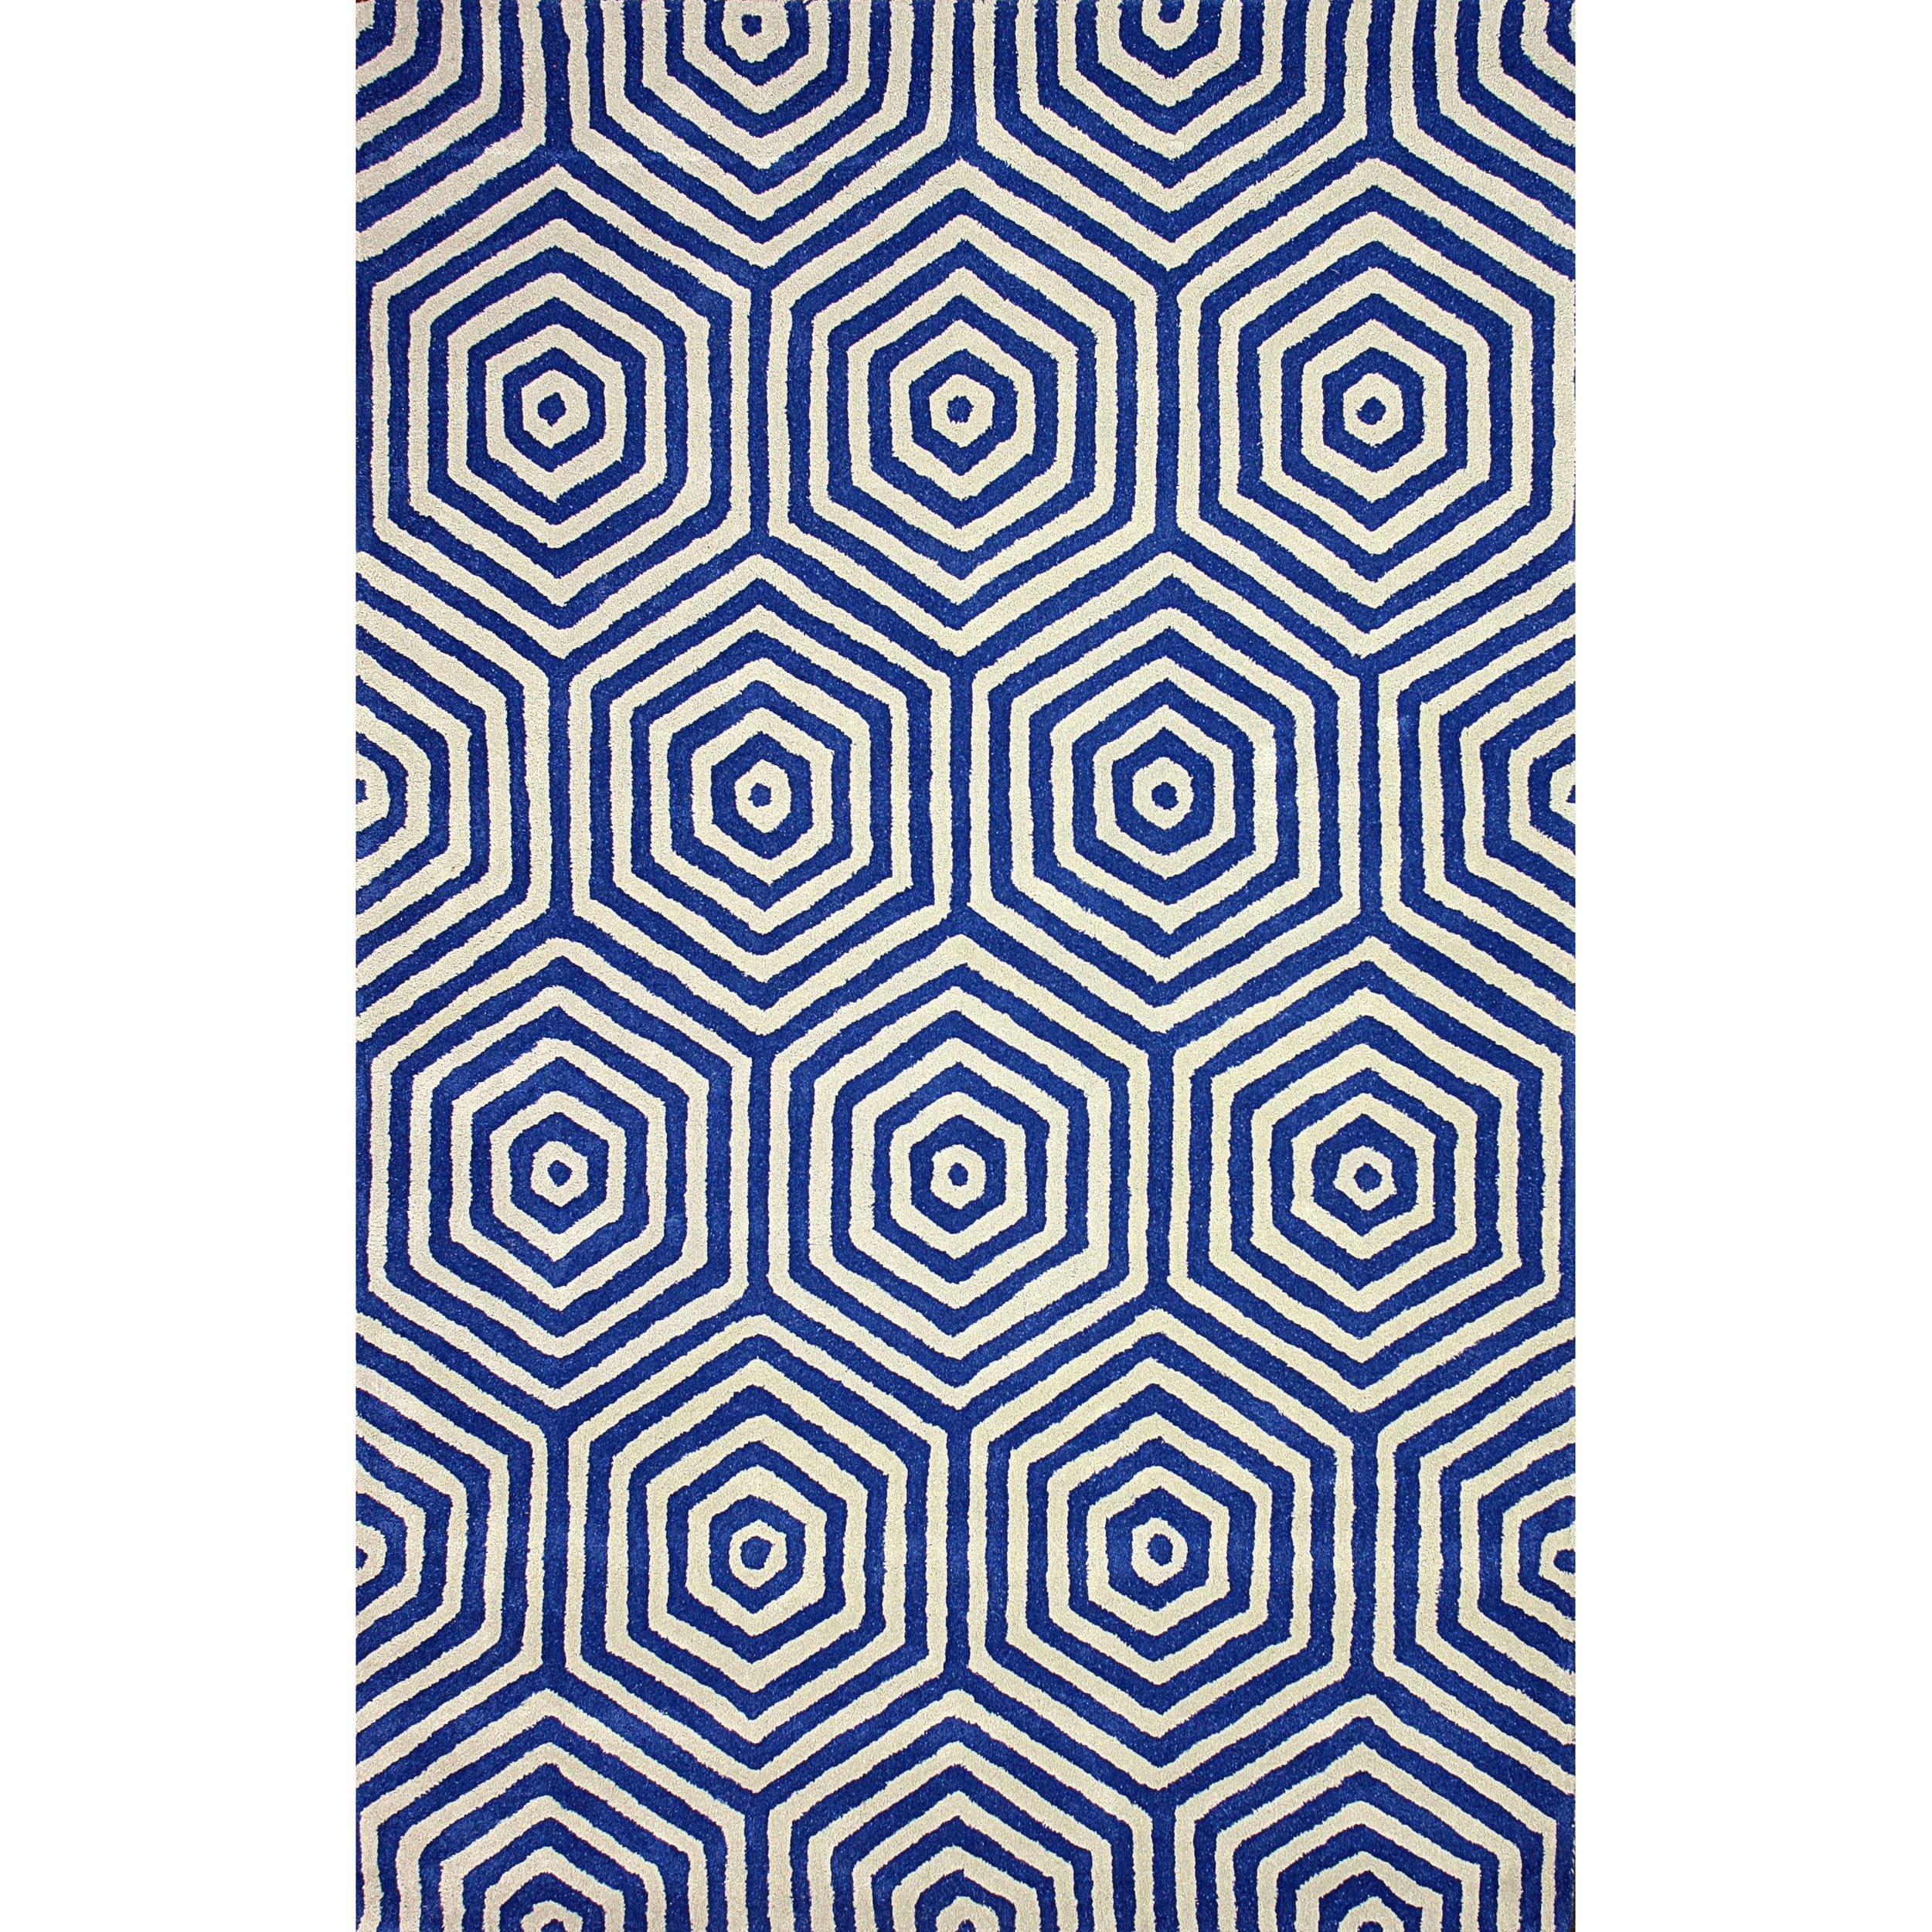 Nuloom Hand tufted Trellis Wool Blue Rug (5 X 8)